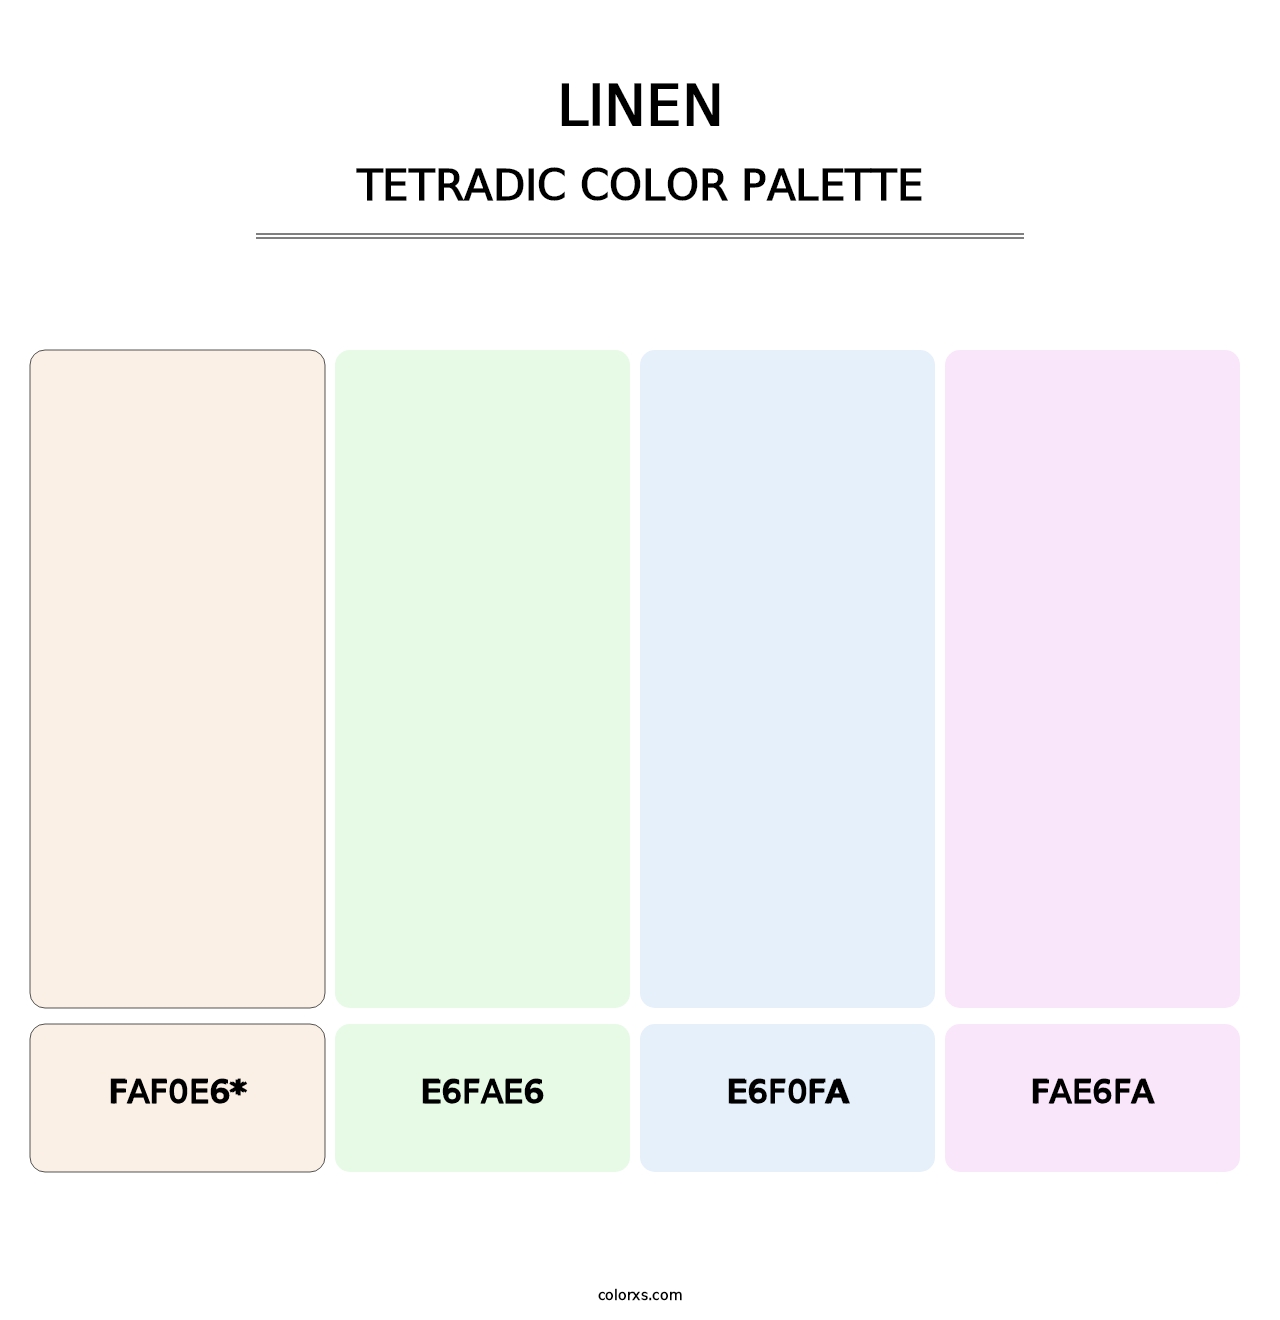 Linen - Tetradic Color Palette